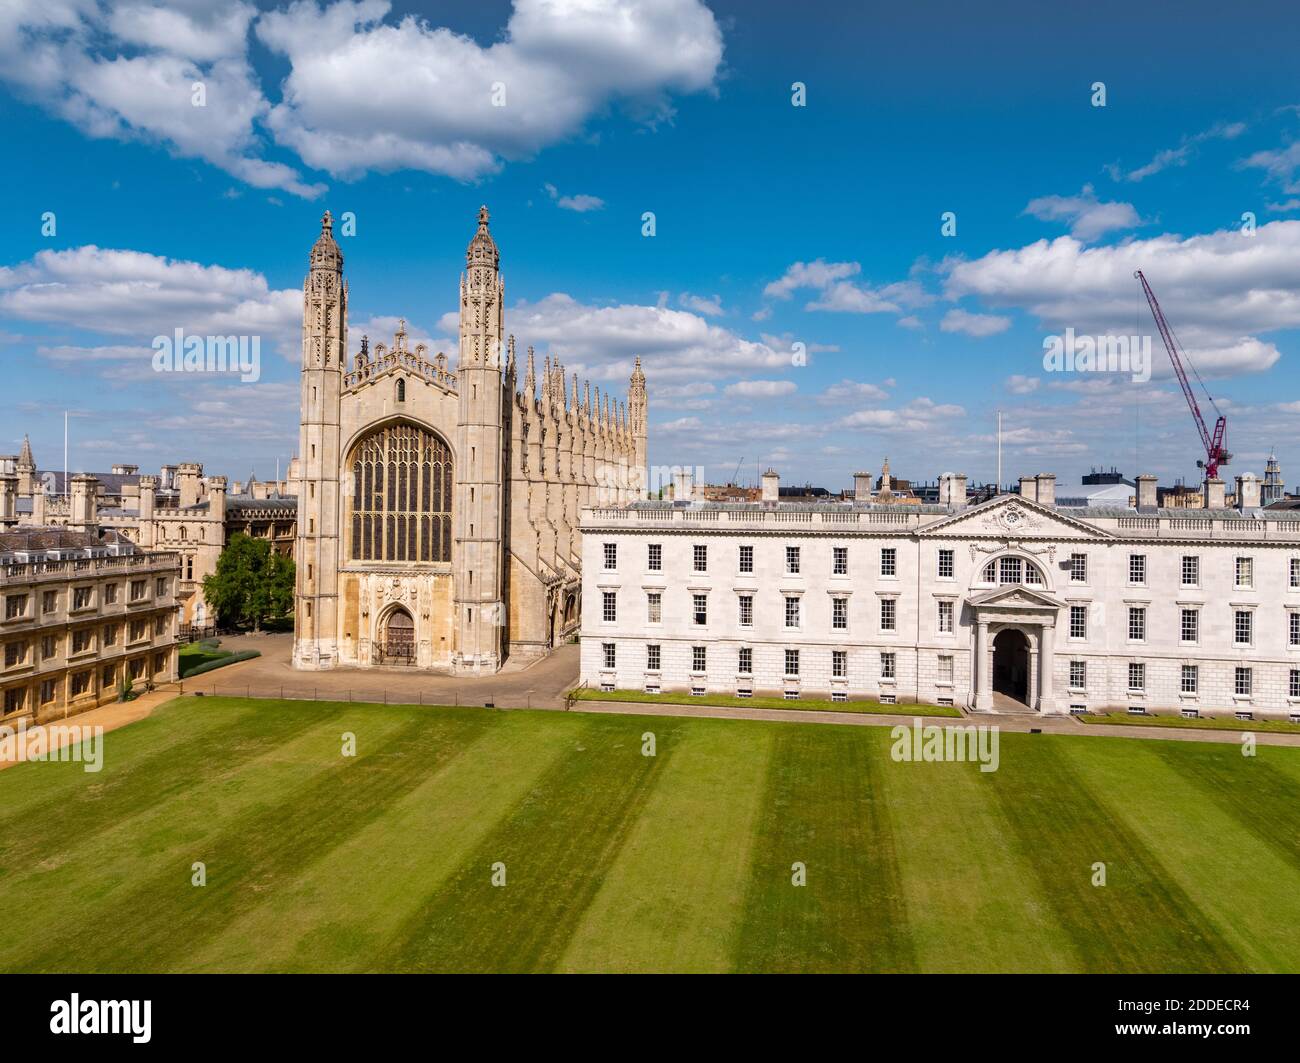 Vue aérienne de King's College Cambridge en Angleterre au Royaume-Uni. Le King's College est un collège de l'Université de Cambridge. Banque D'Images